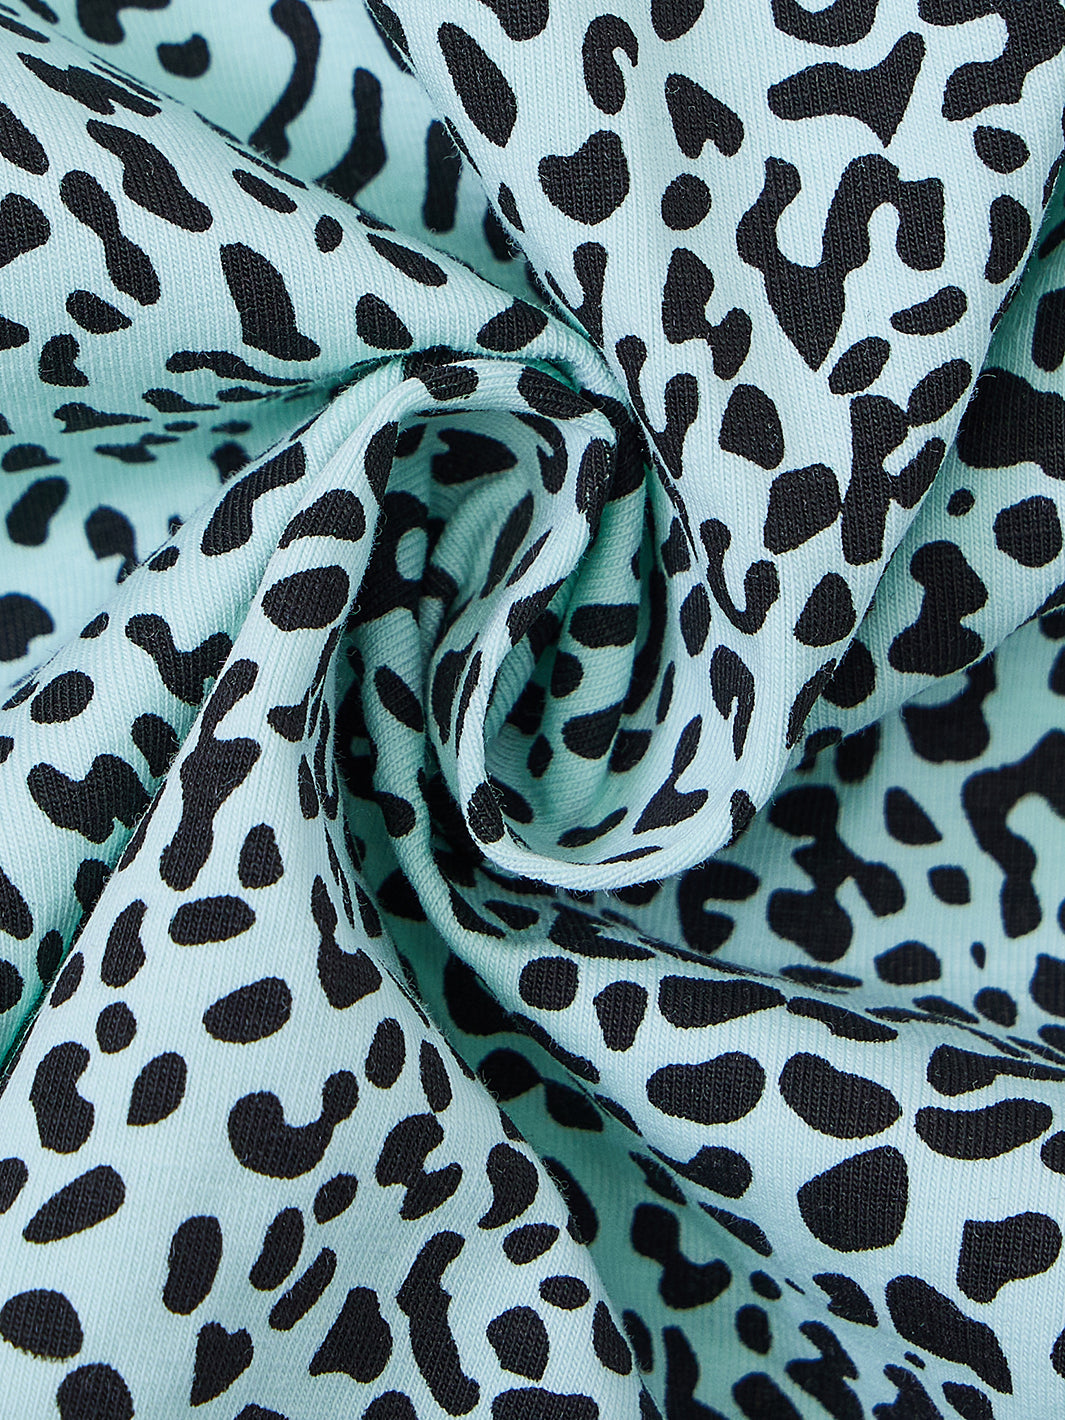 Leopard Print Short Sleeve T-shirt